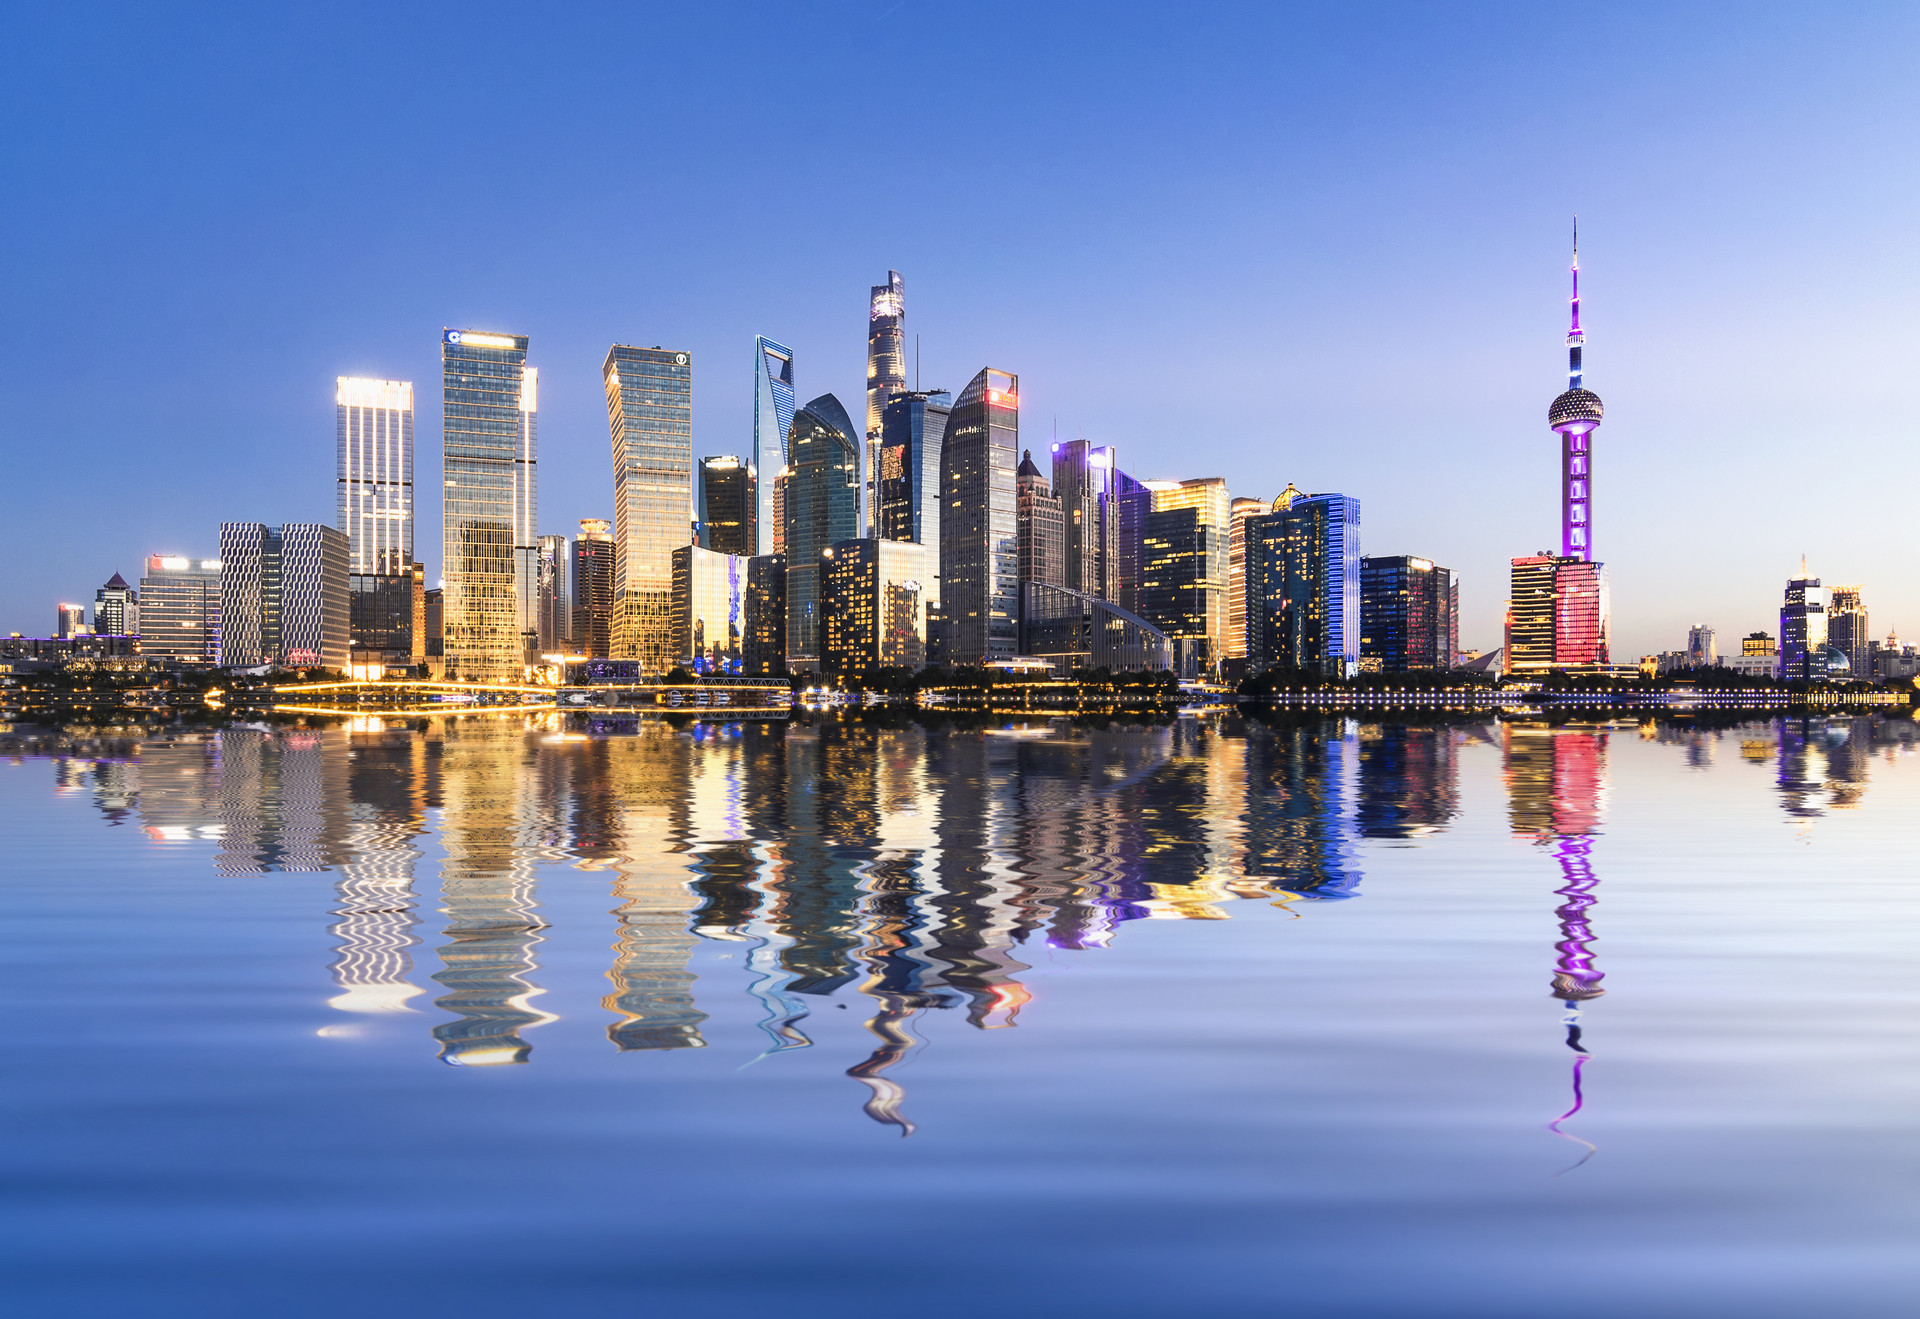 上海推出“上海旅游”倍增发展计划 打造一批高品质旅游目的地